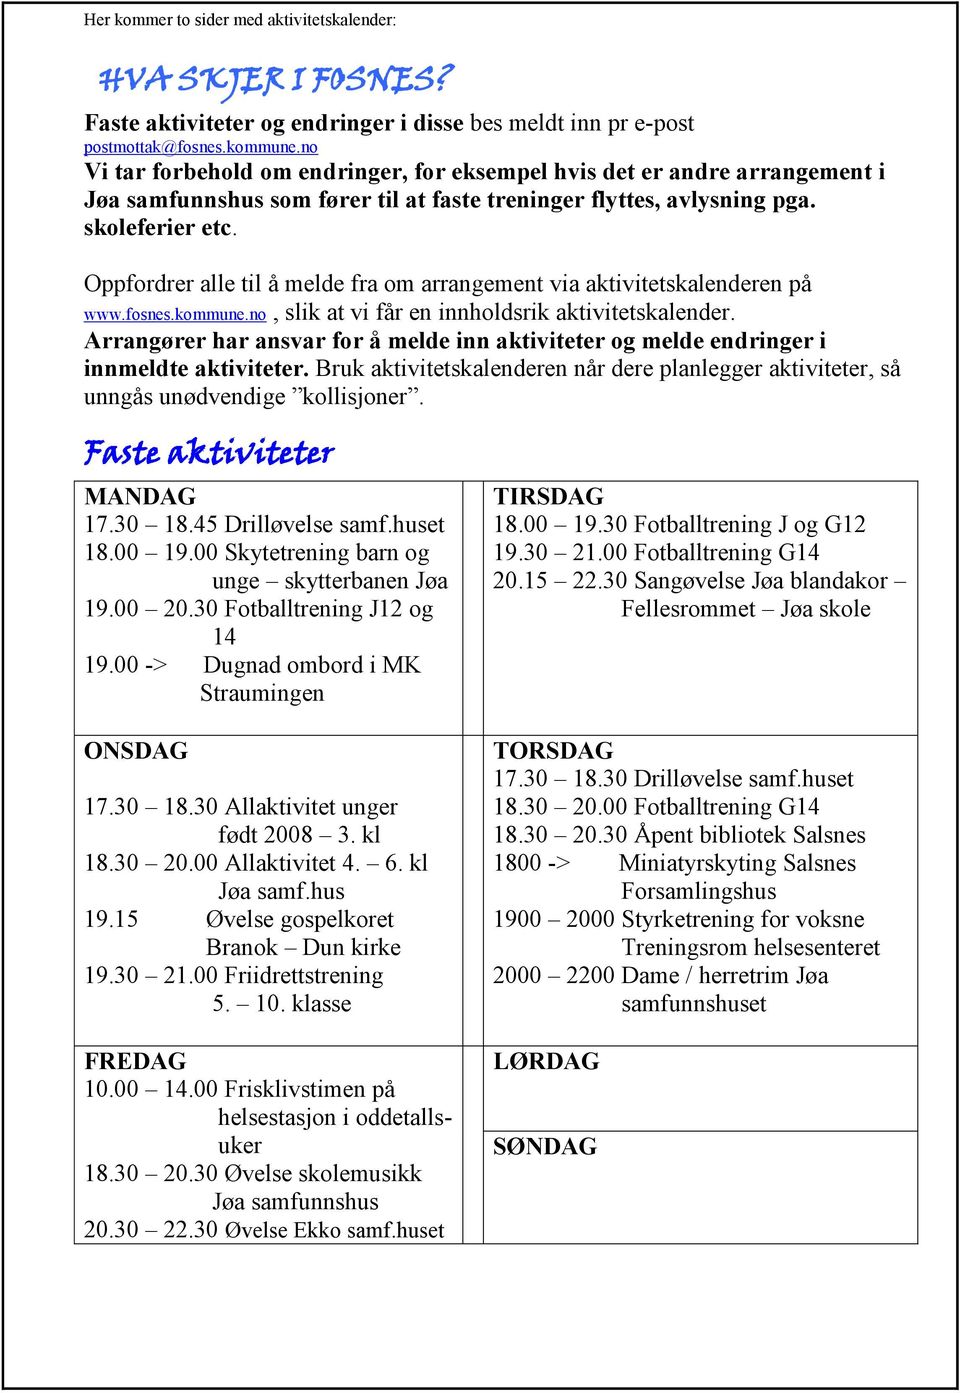 Oppfordrer alle til å melde fra om arrangement via aktivitetskalenderen på www.fosnes.kommune.no, slik at vi får en innholdsrik aktivitetskalender.